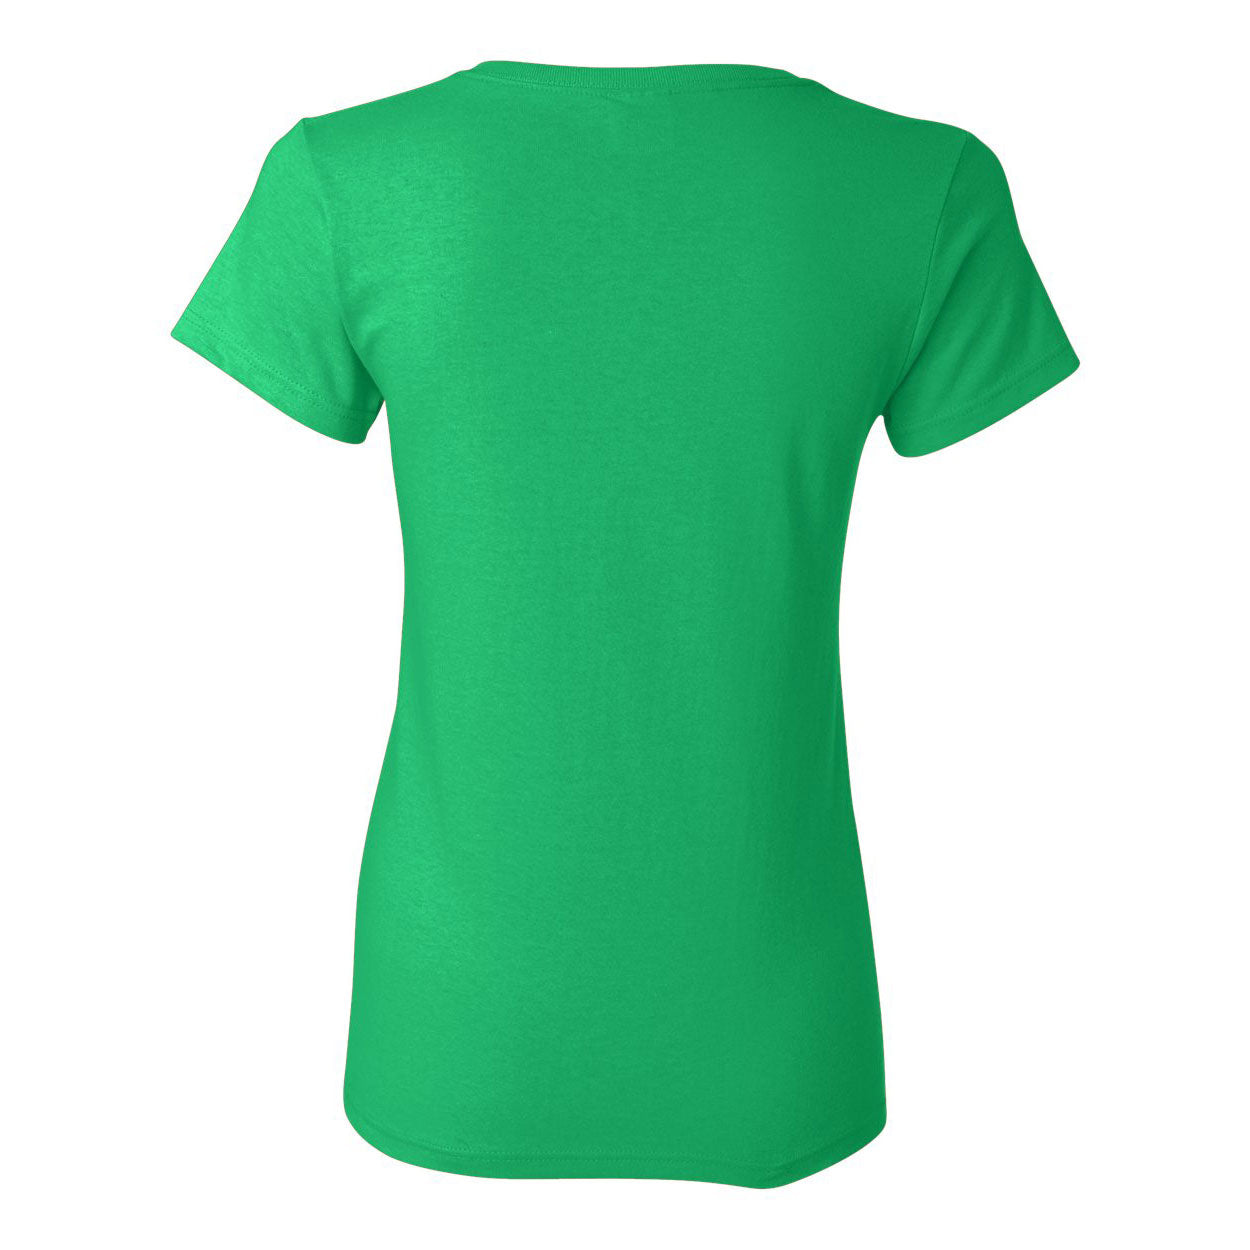 Short sleeve T-shirt Woman- Gildan 5000L